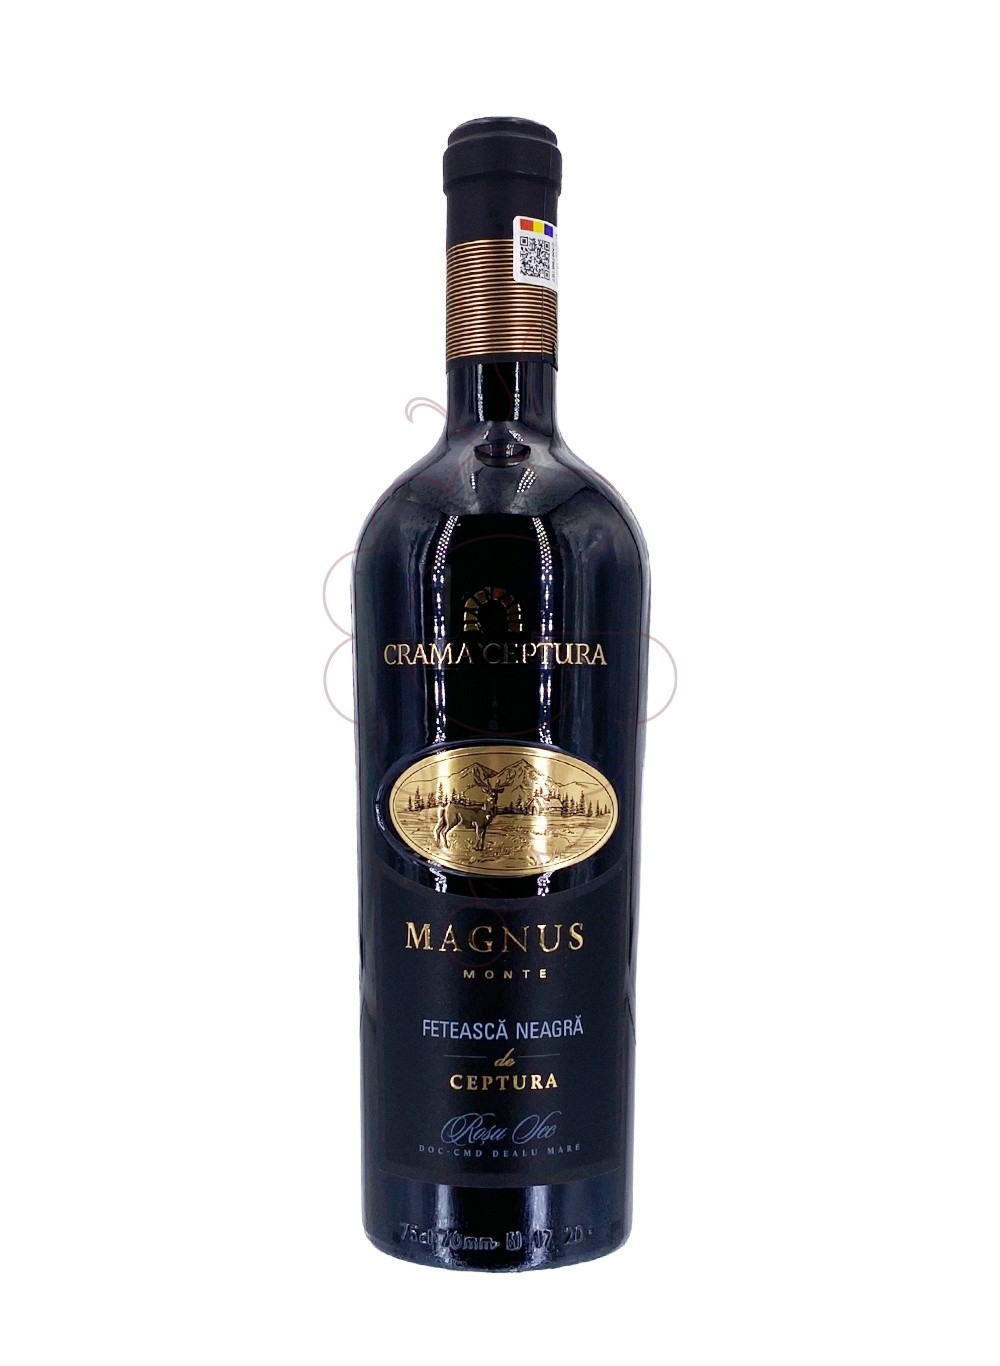 Photo Crama Ceptura Cervus Magnus Monte Feteasca Neagra red wine